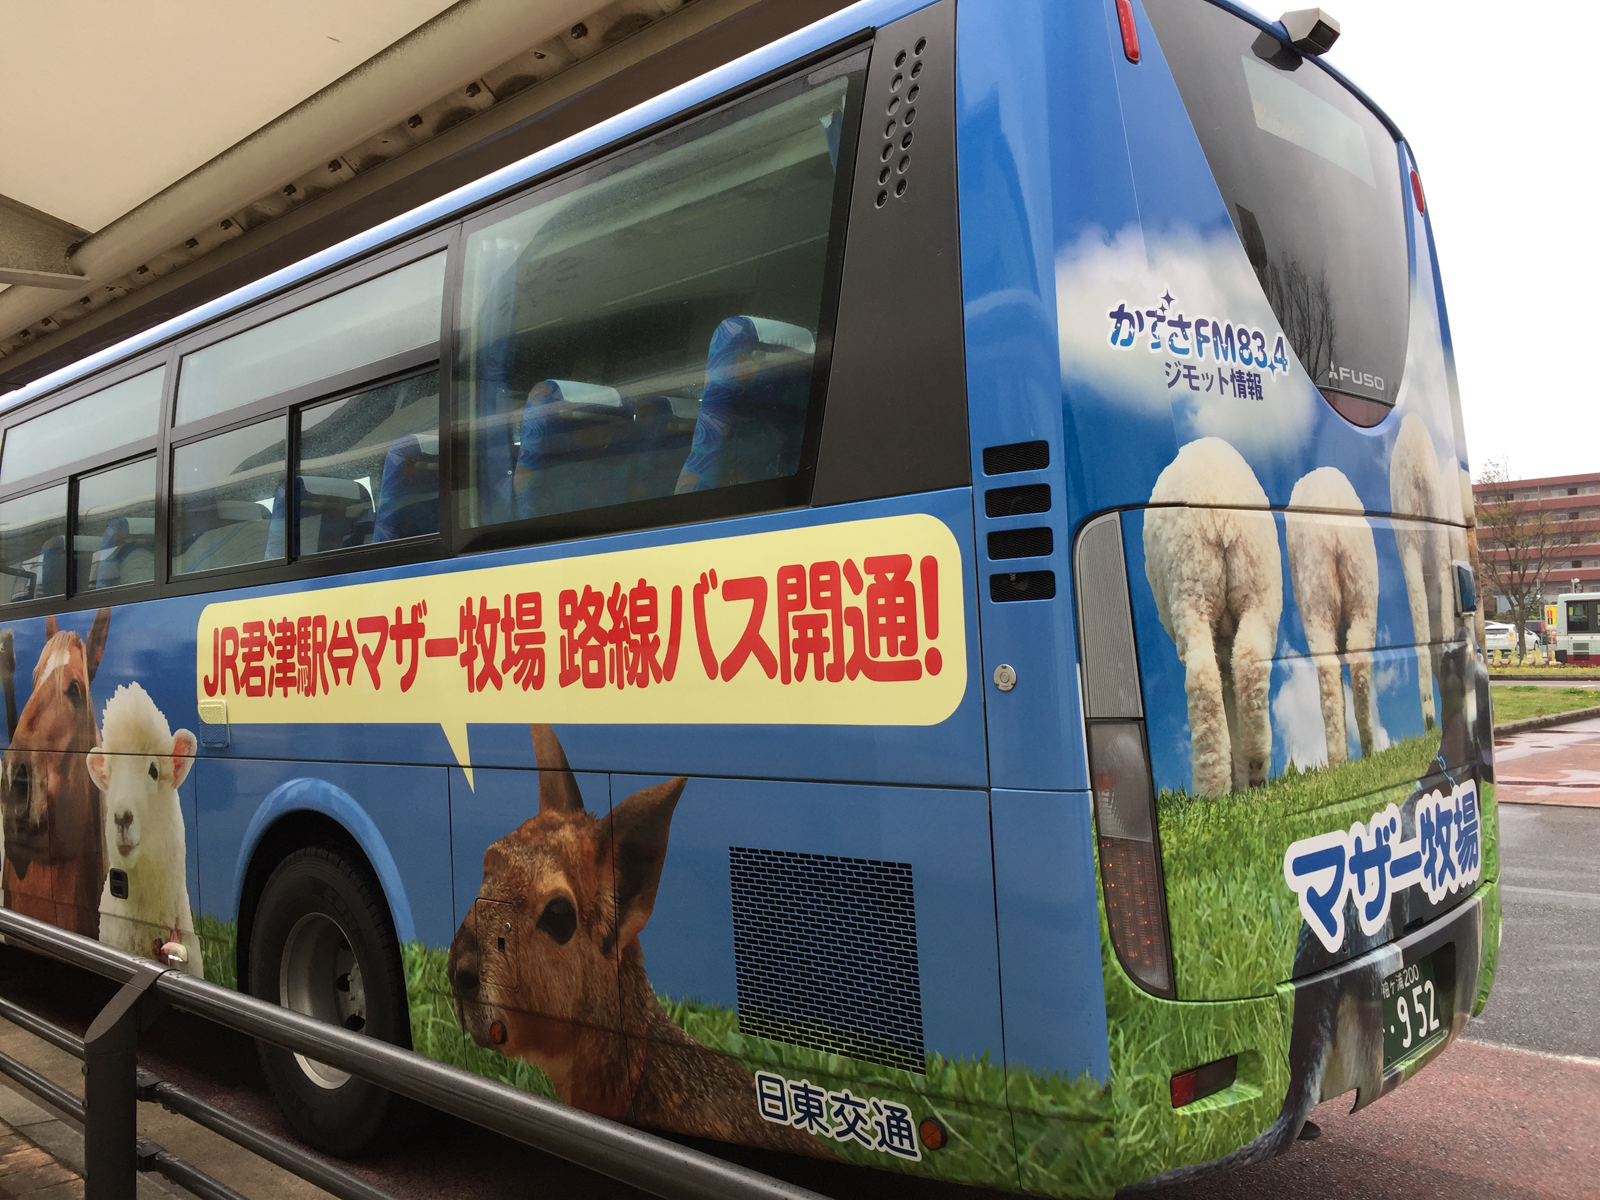 路線バスのラッピング広告で知りました。ちなみに広告の路線は君津〜東京線。